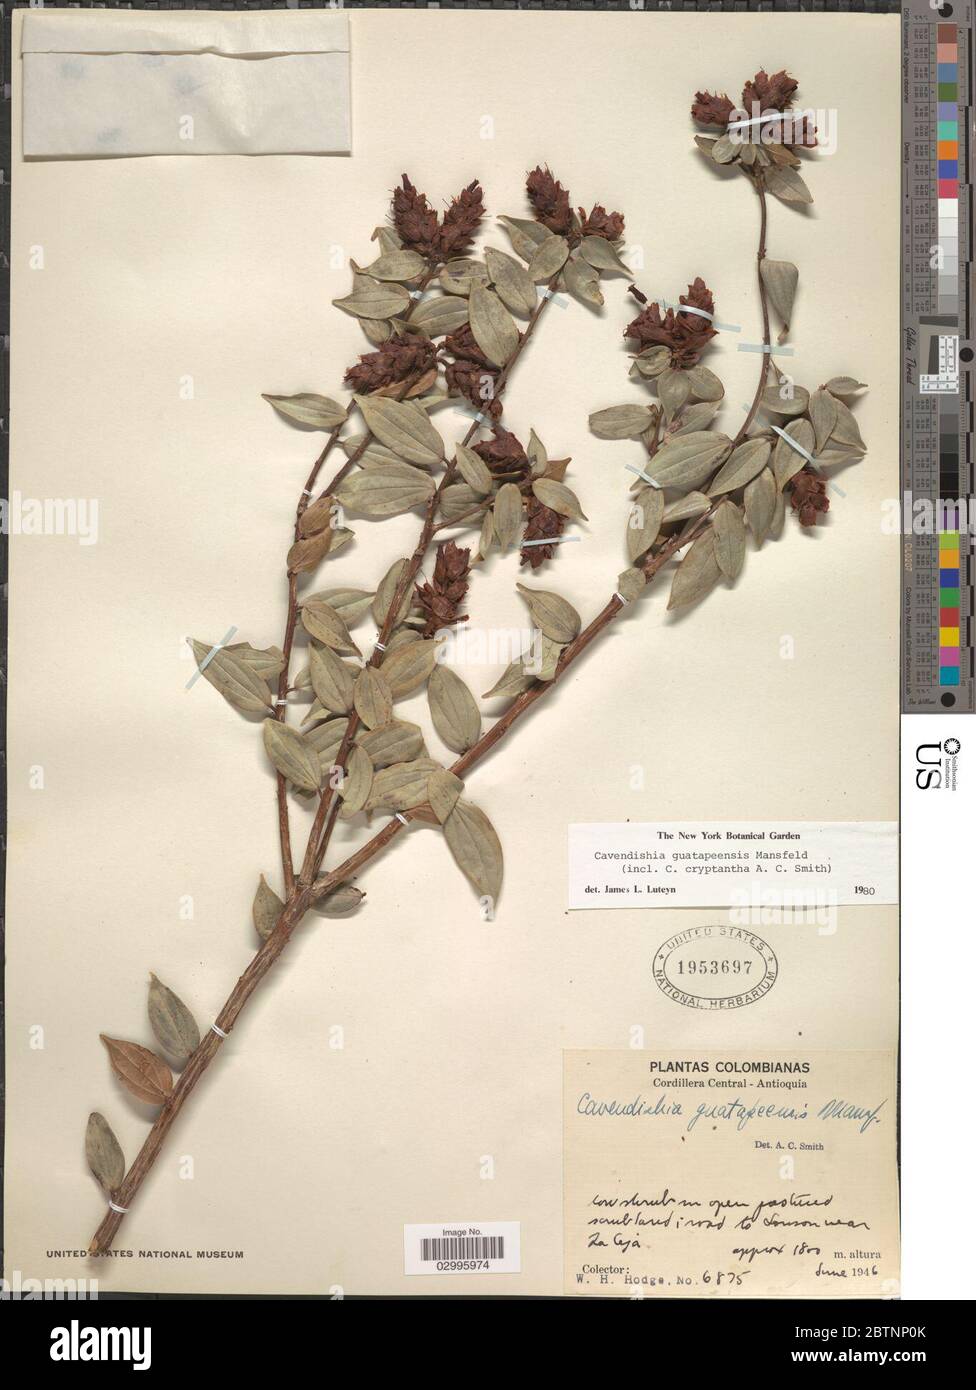 Cavendishia guatapeensis Mansf. Stock Photo